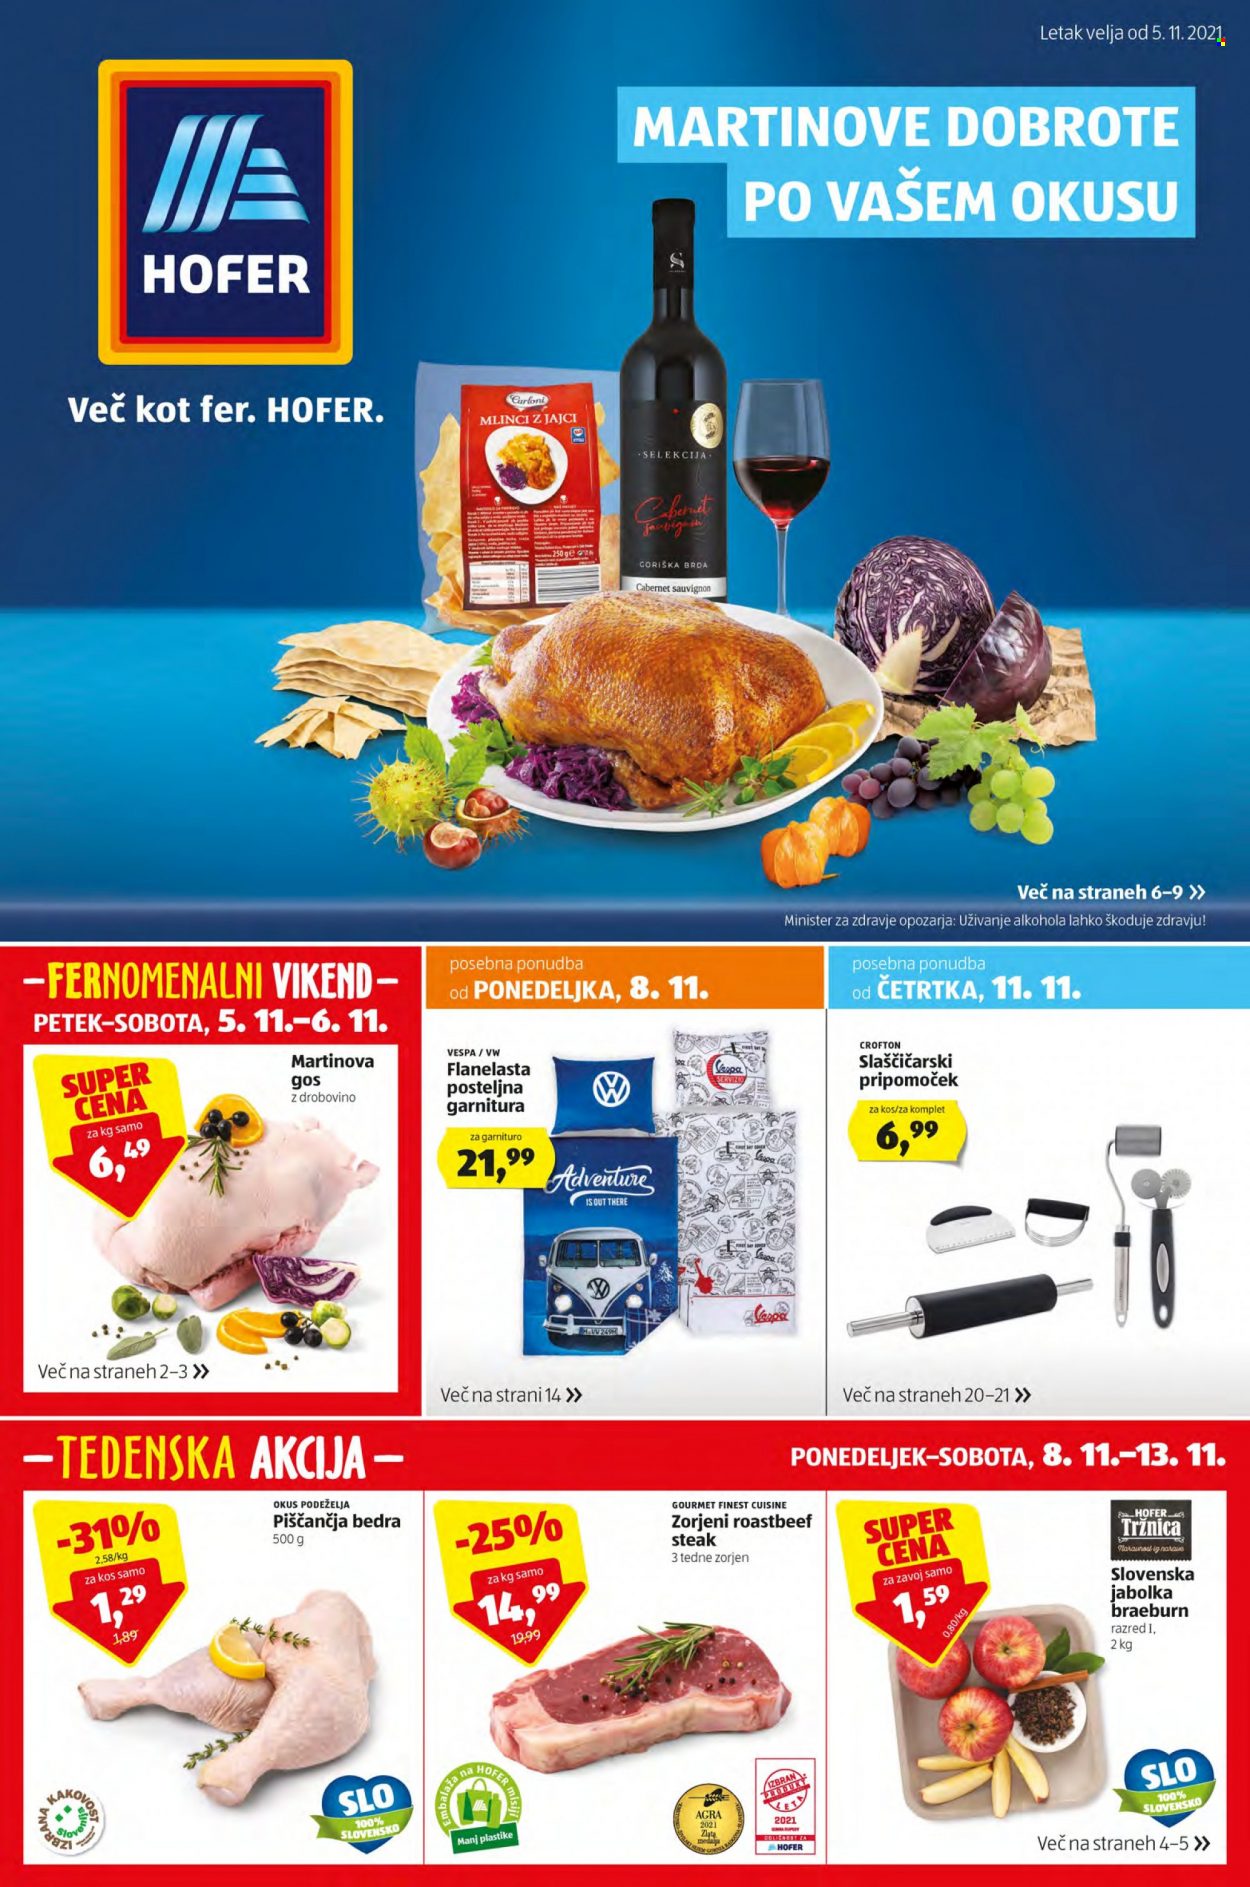 Hofer katalog - 05.11.2021 - 13.11.2021 - Ponudba izdelkov - jabolka, piščančja bedra, sauvignon, steak. Stran 1.